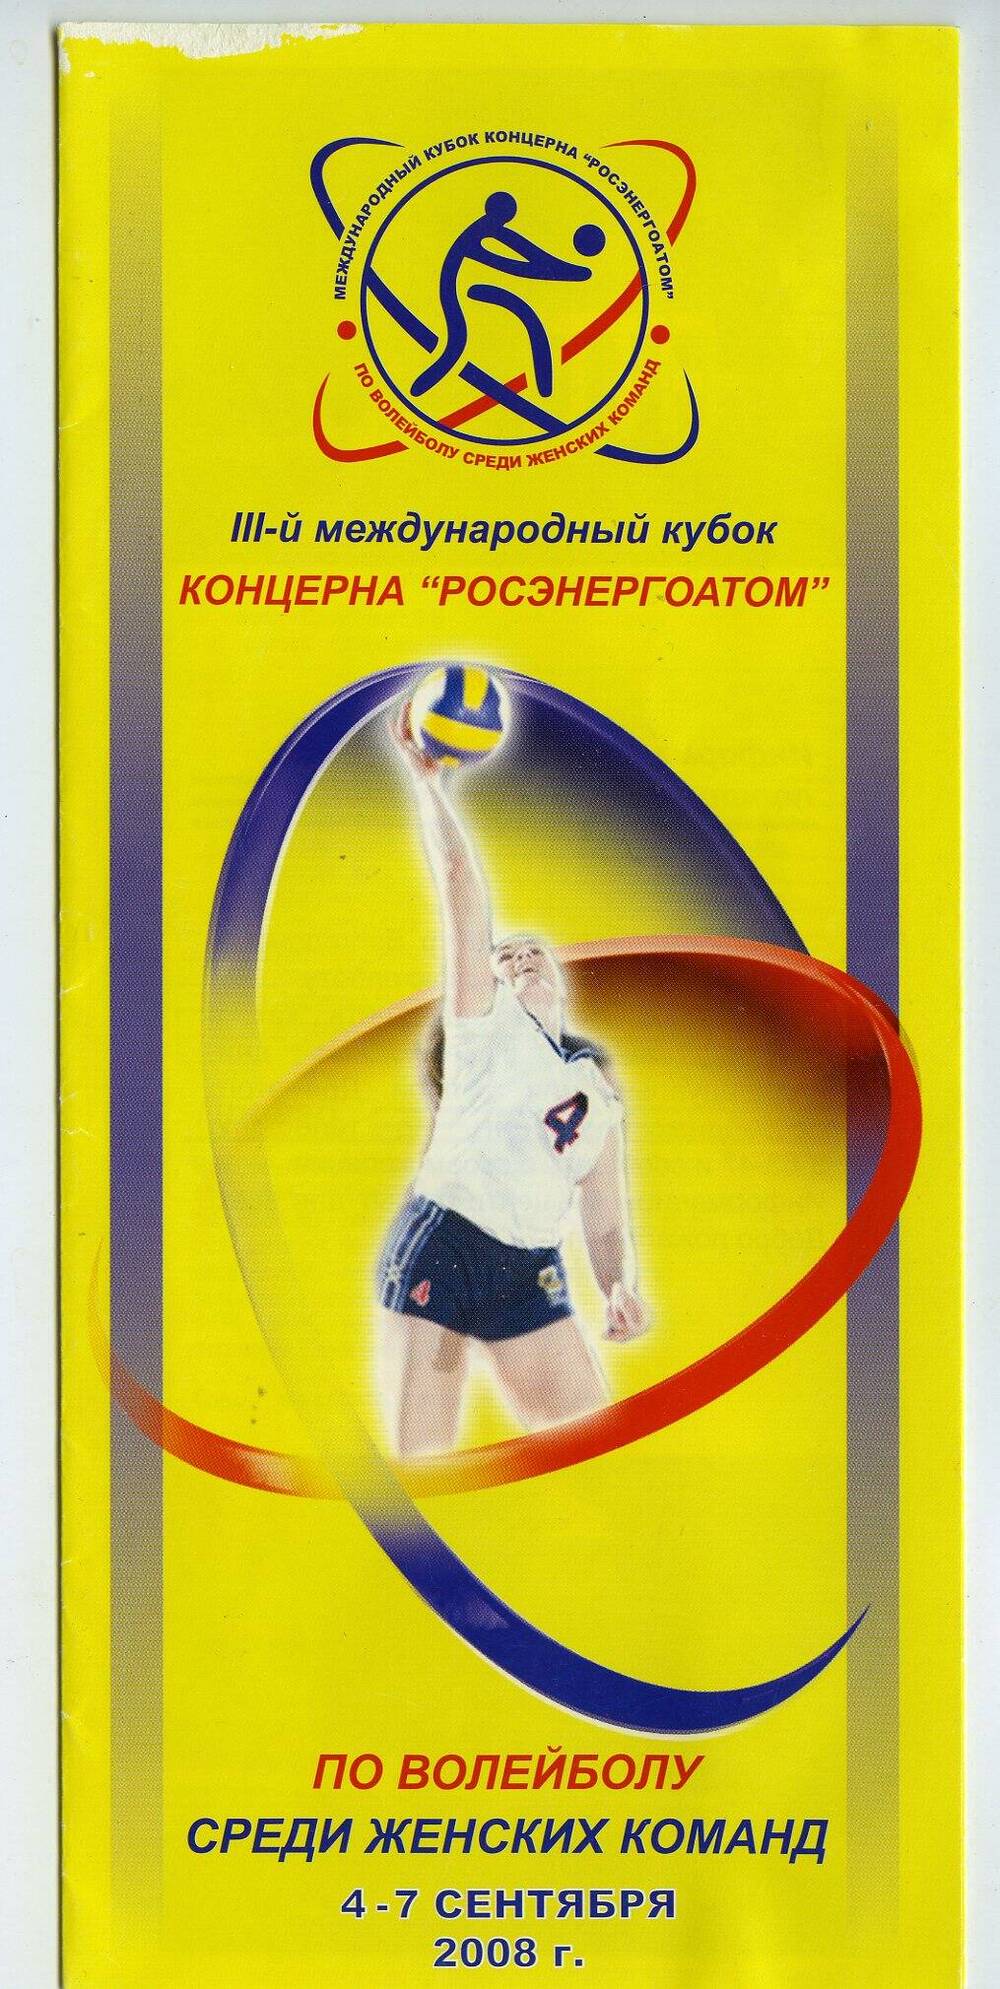 Буклет. III-й международный кубок концерна Росэнергоатом по волейболу среди женских команд